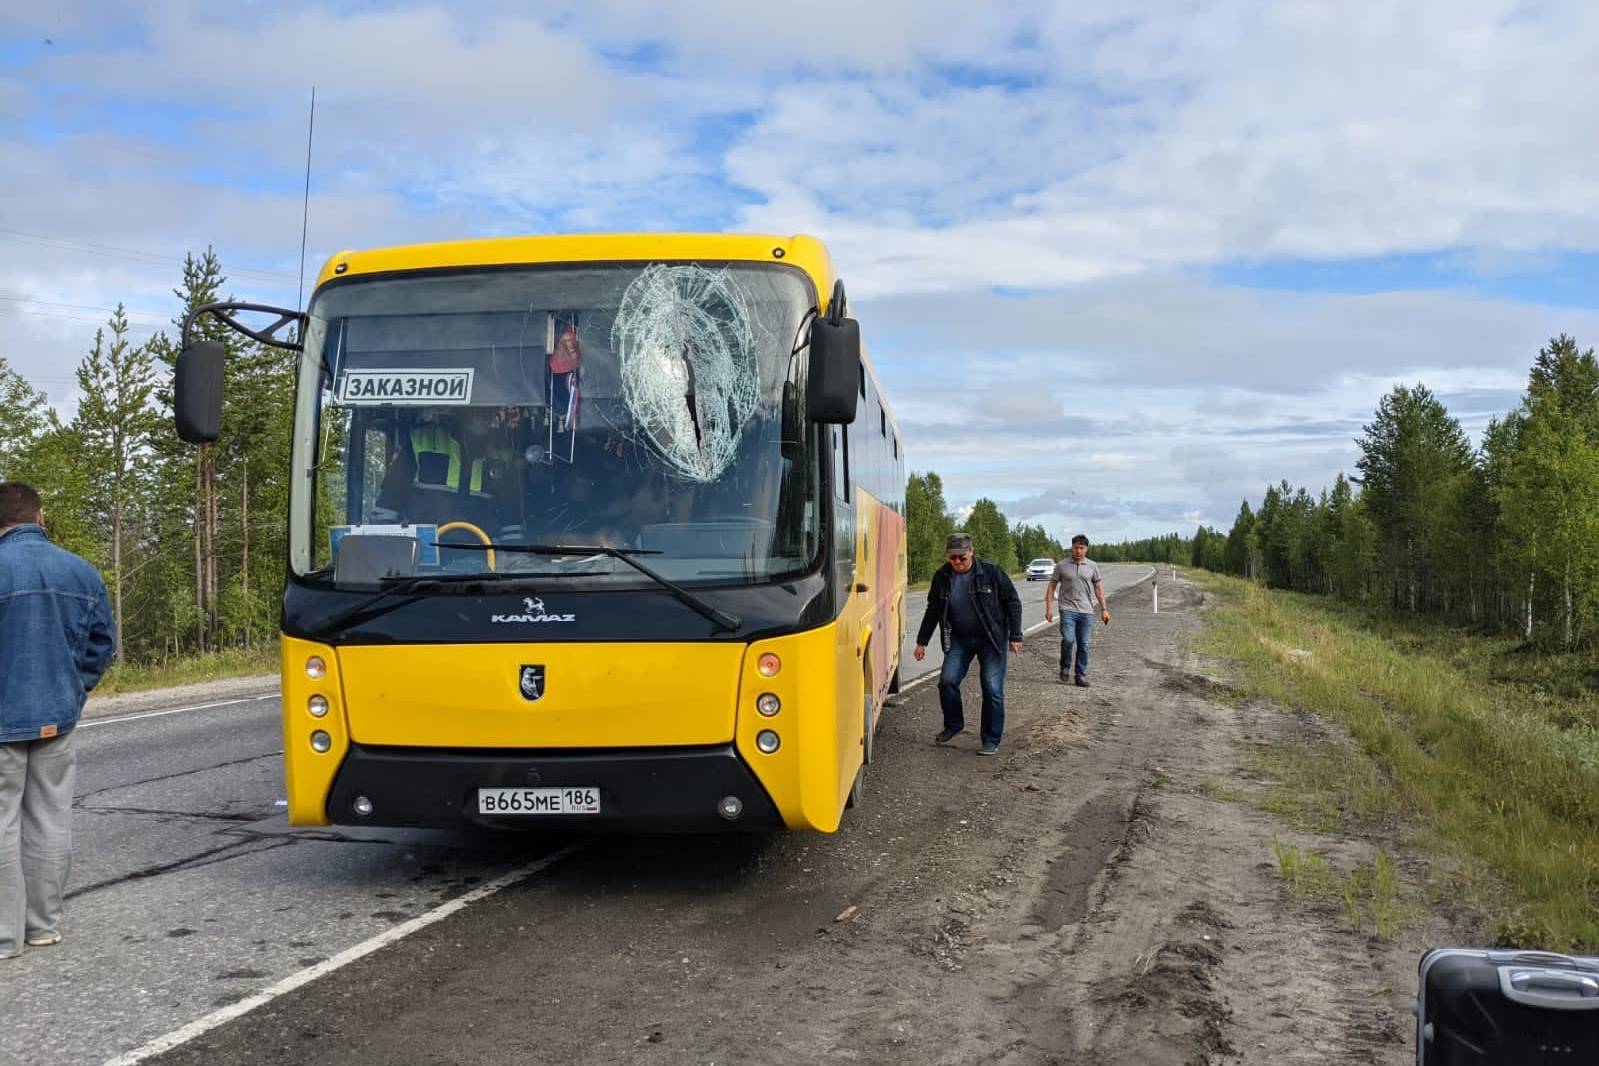 Как в "Пункте назначения": На Ямале водителя автобуса убило вылетевшим из грузовика ломом